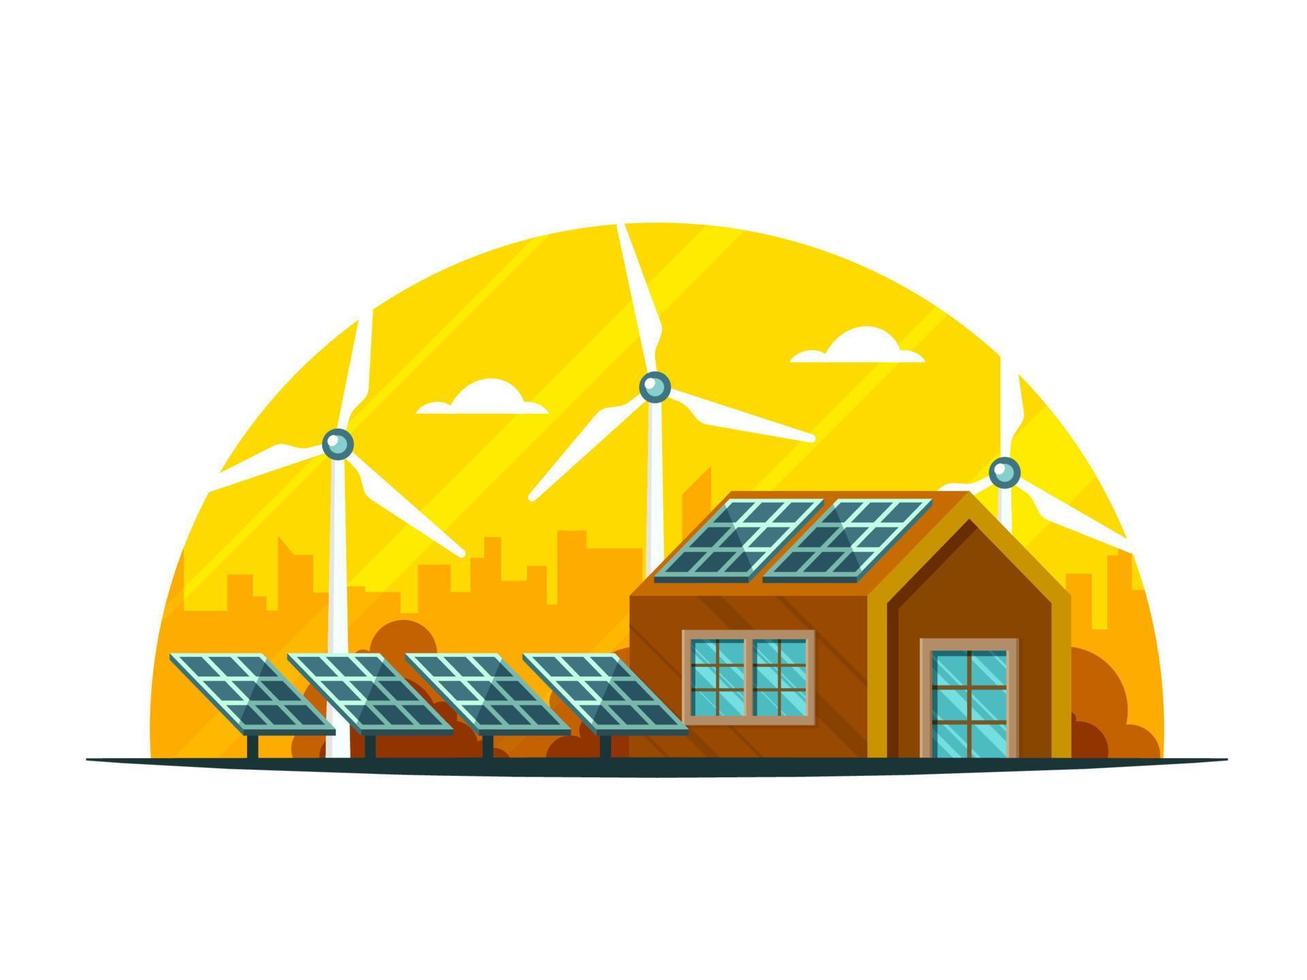 landsbygden se av hus illustration, sol- paneler och väderkvarnar på gul och vit bakgrund. vektor